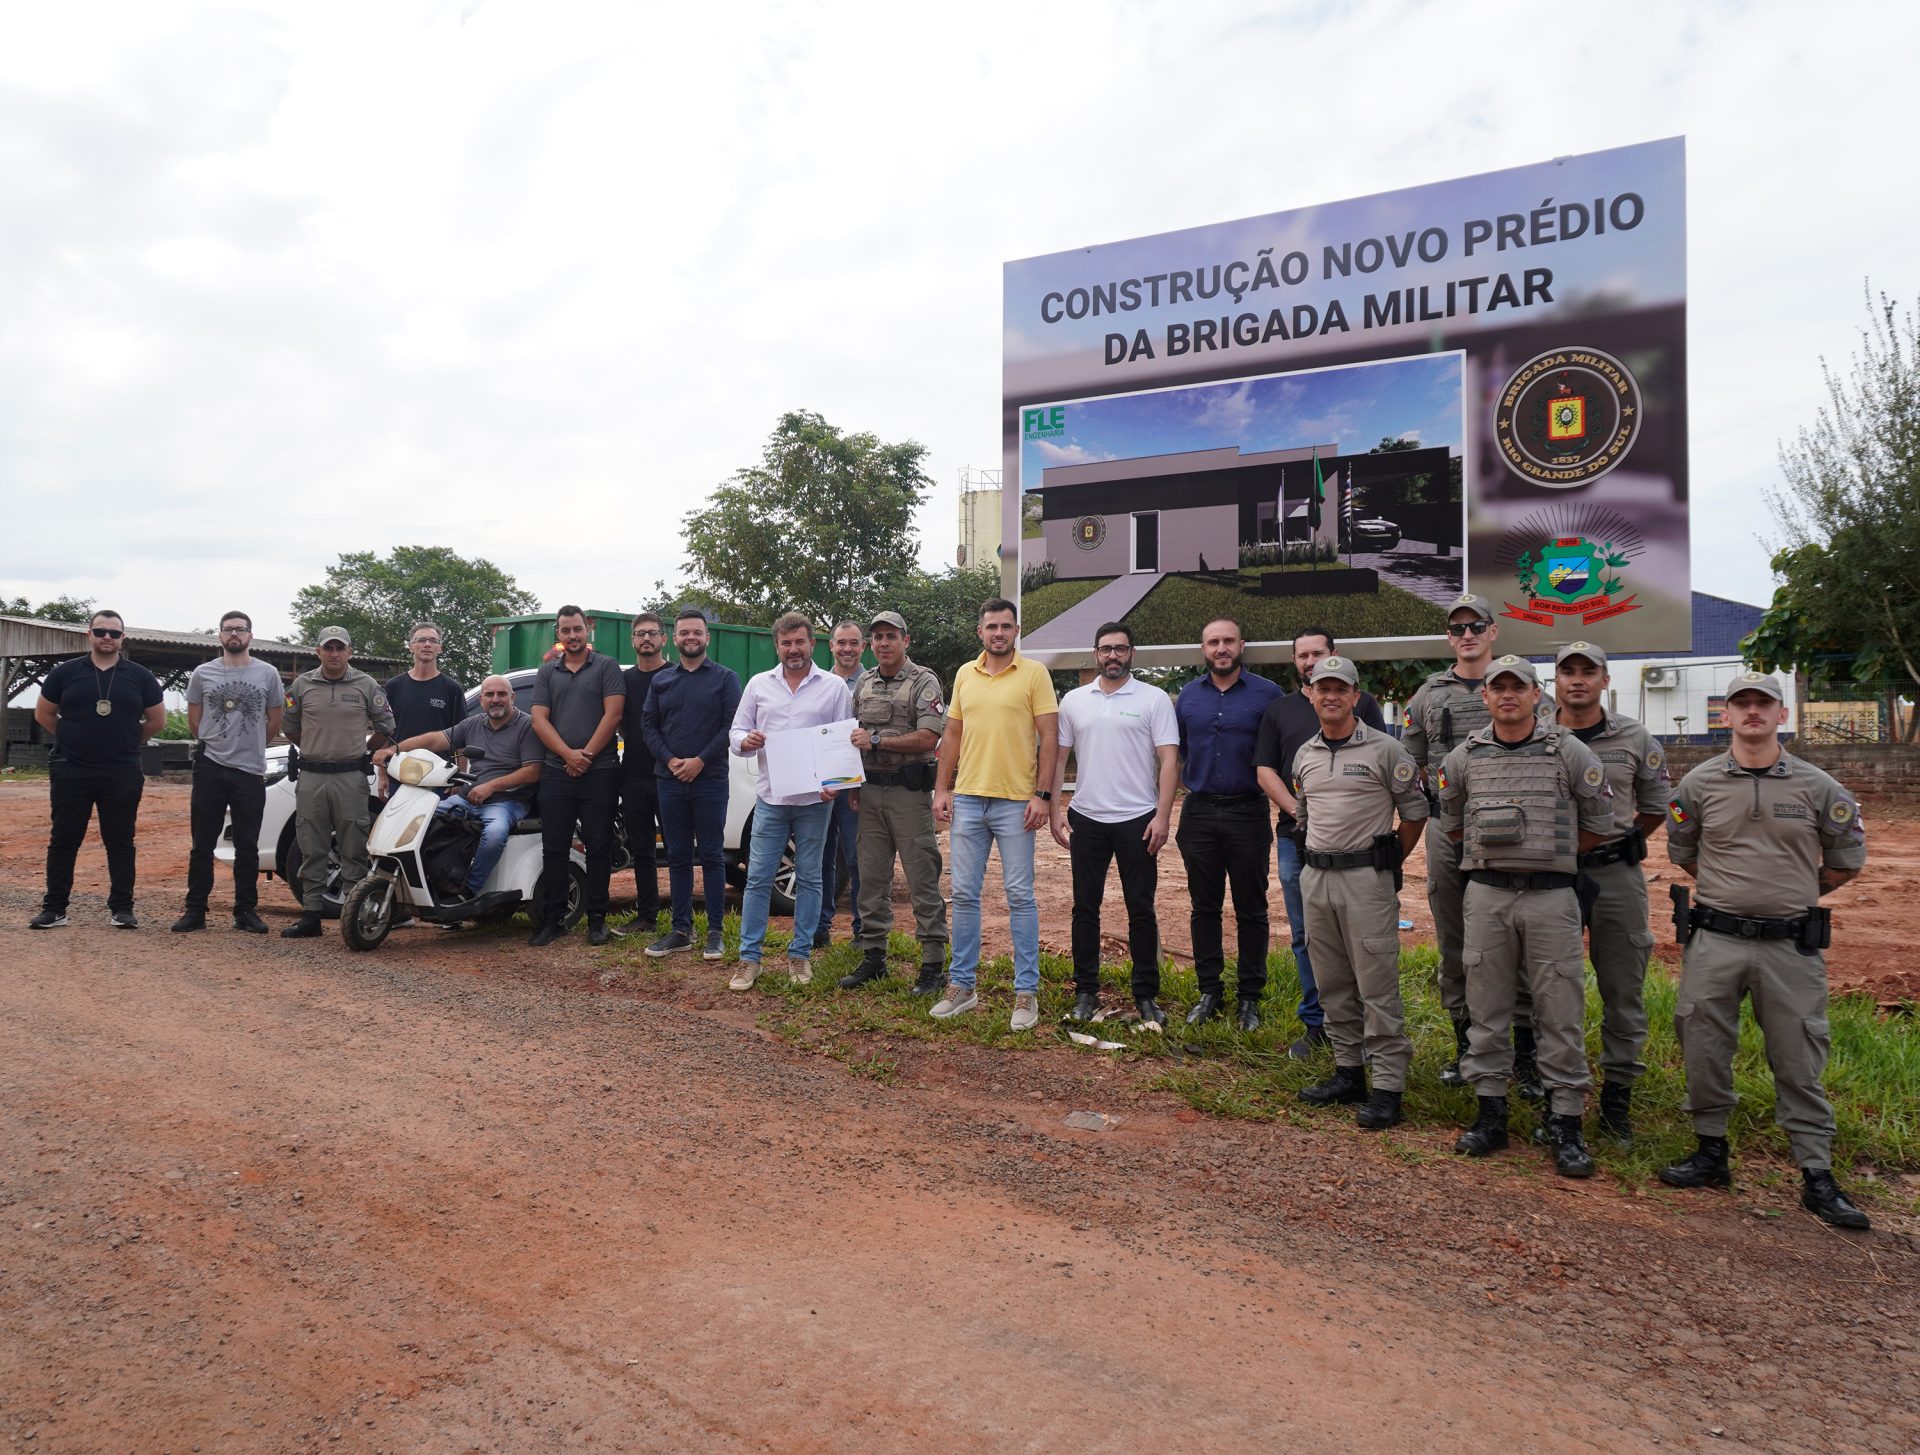 Brigada Militar BM prédio obra Bom Retiro do Sul – agoranovale-lajeado